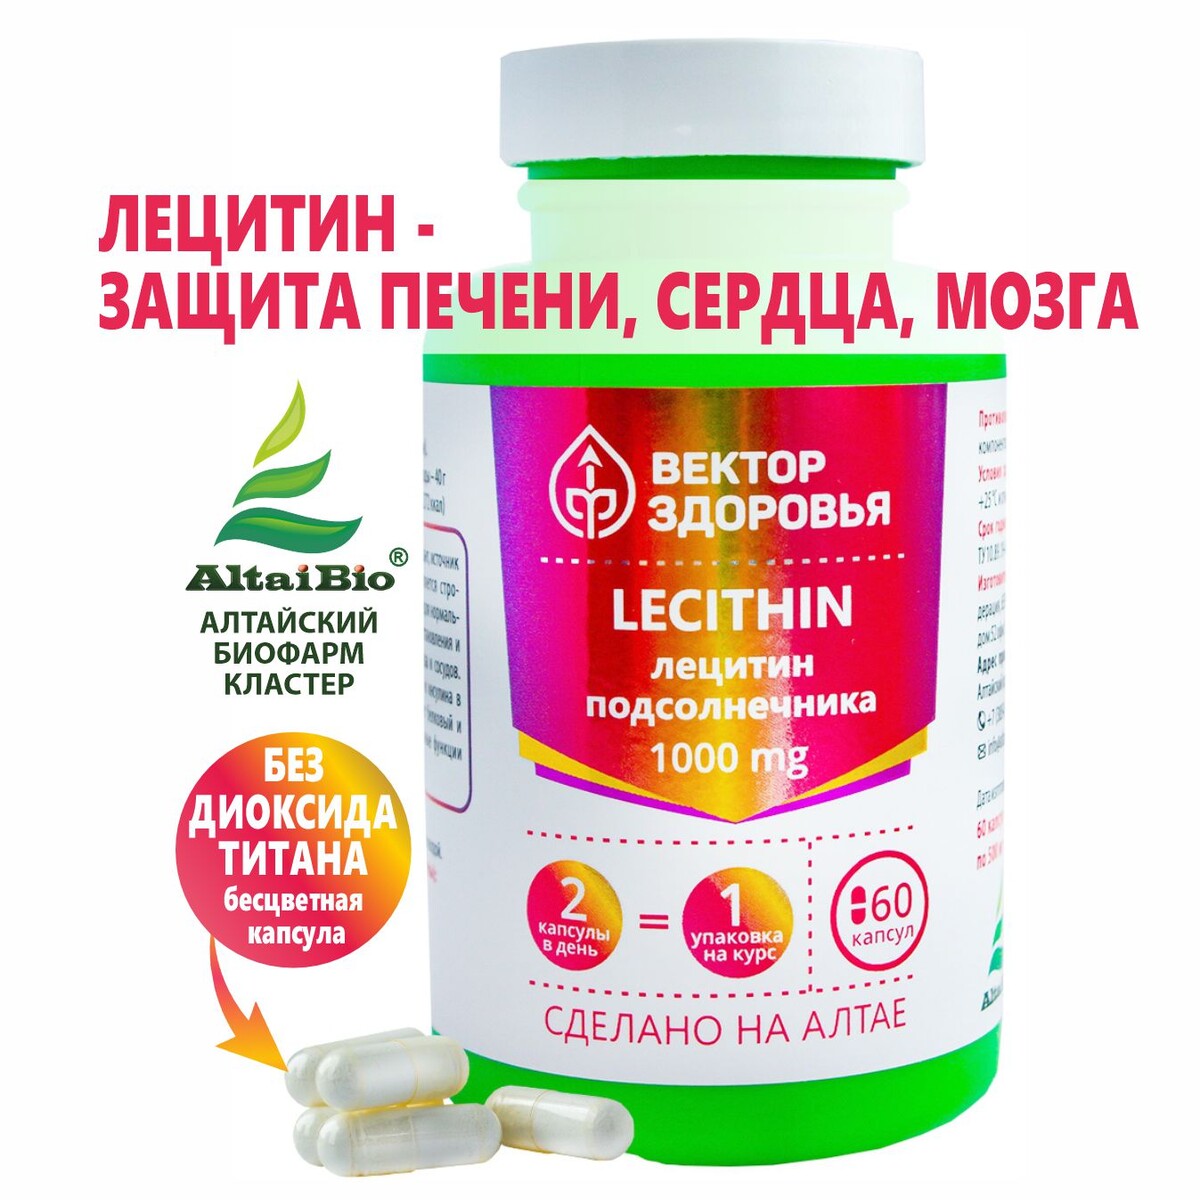 Комплекс lecithin лецитин подсолнечника зола подсолнечника